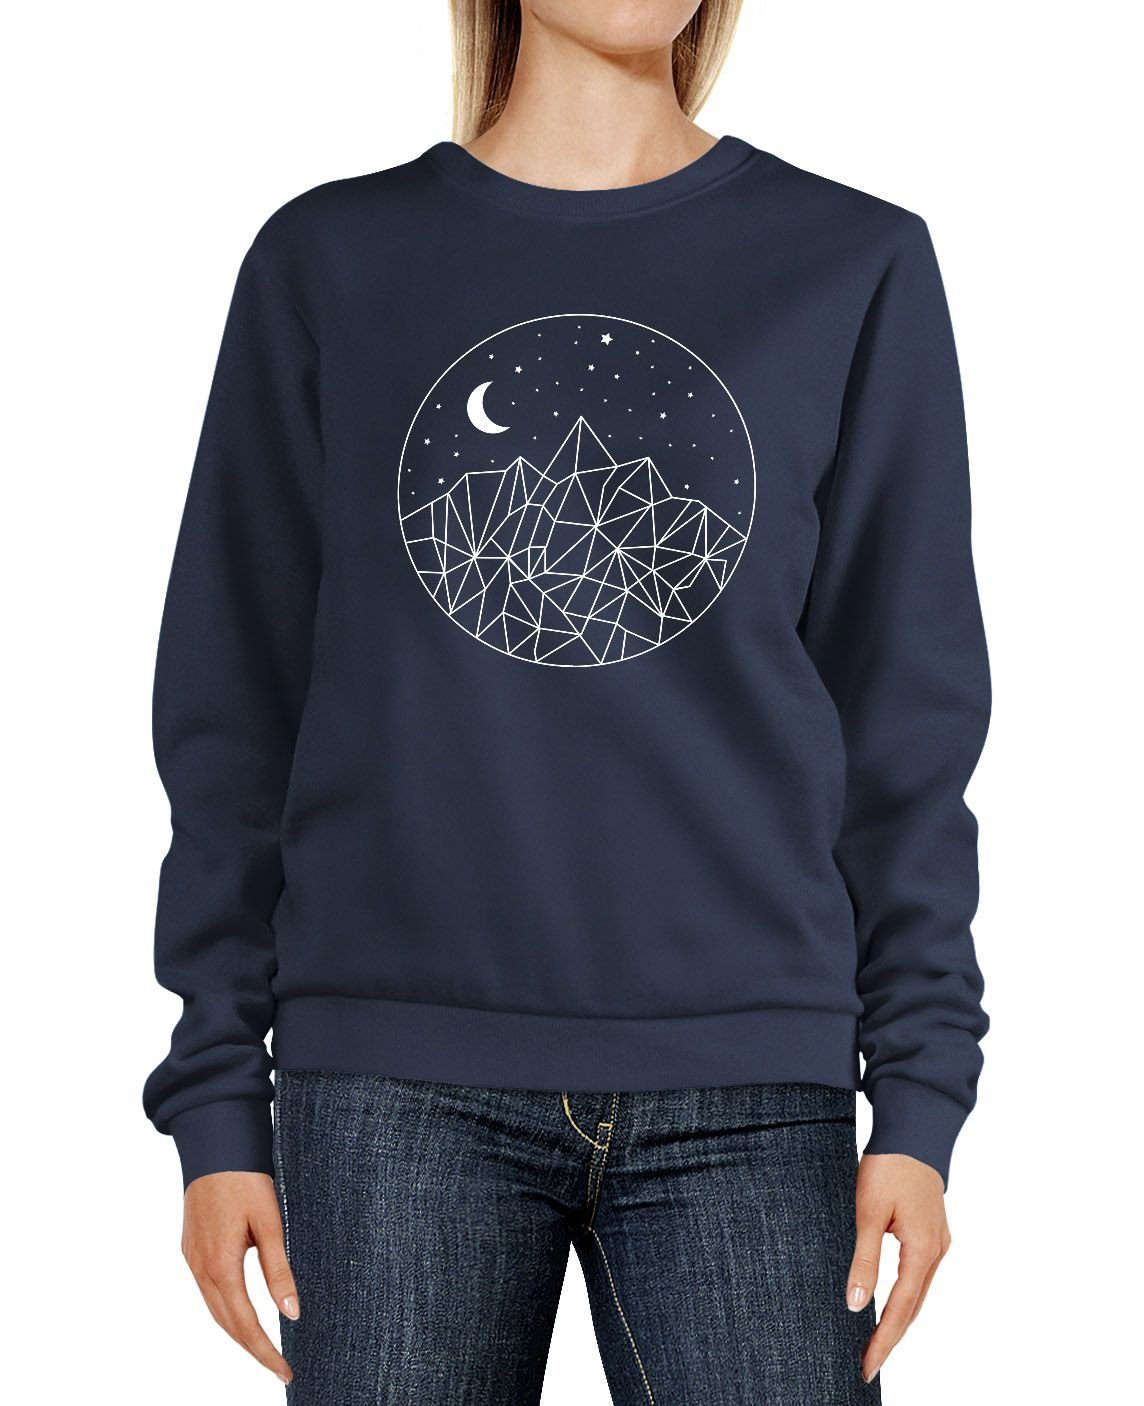 Neverless Sweatshirt »Sweatshirt Damen Print Berge und Sterne Polygon  Design Rundhals-Pullover Pulli Sweater Neverless®« online kaufen | OTTO